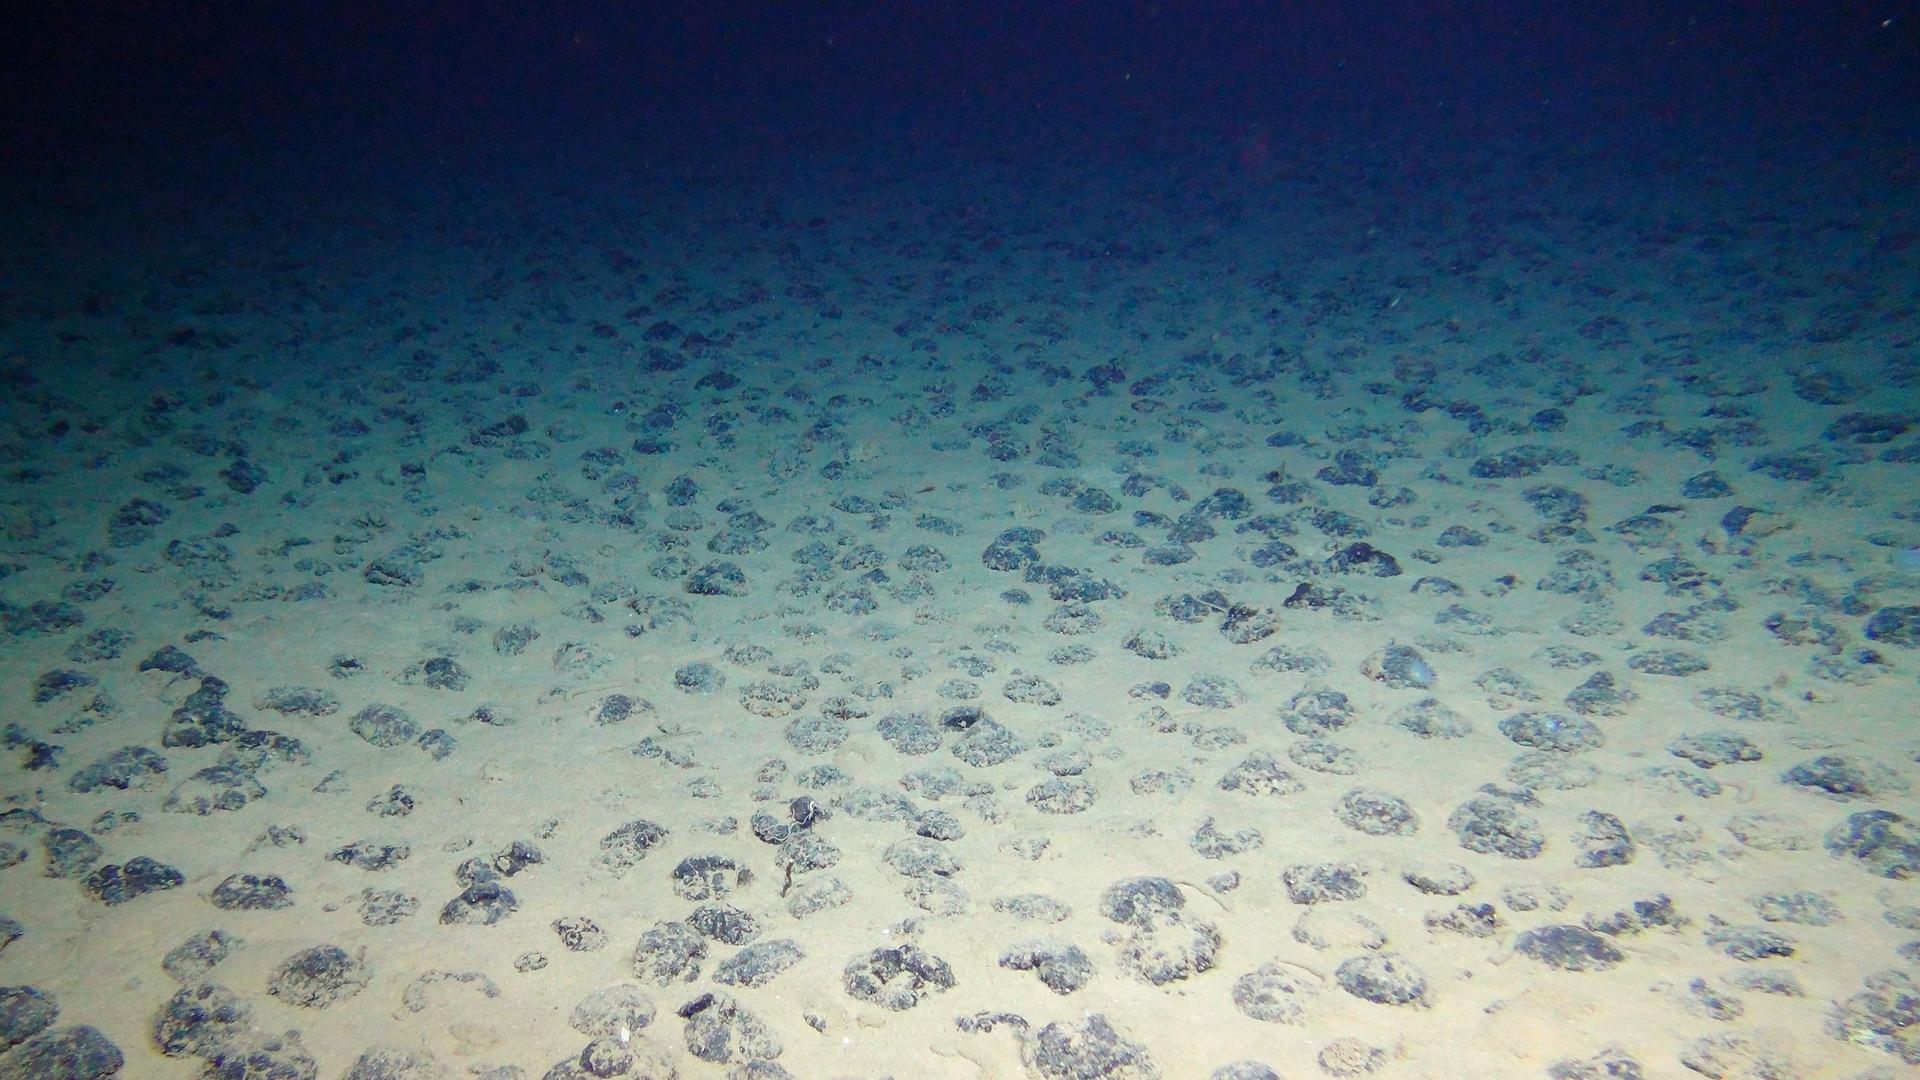 Manganknollen auf dem Meresboden schimmern blaugrünlich. 